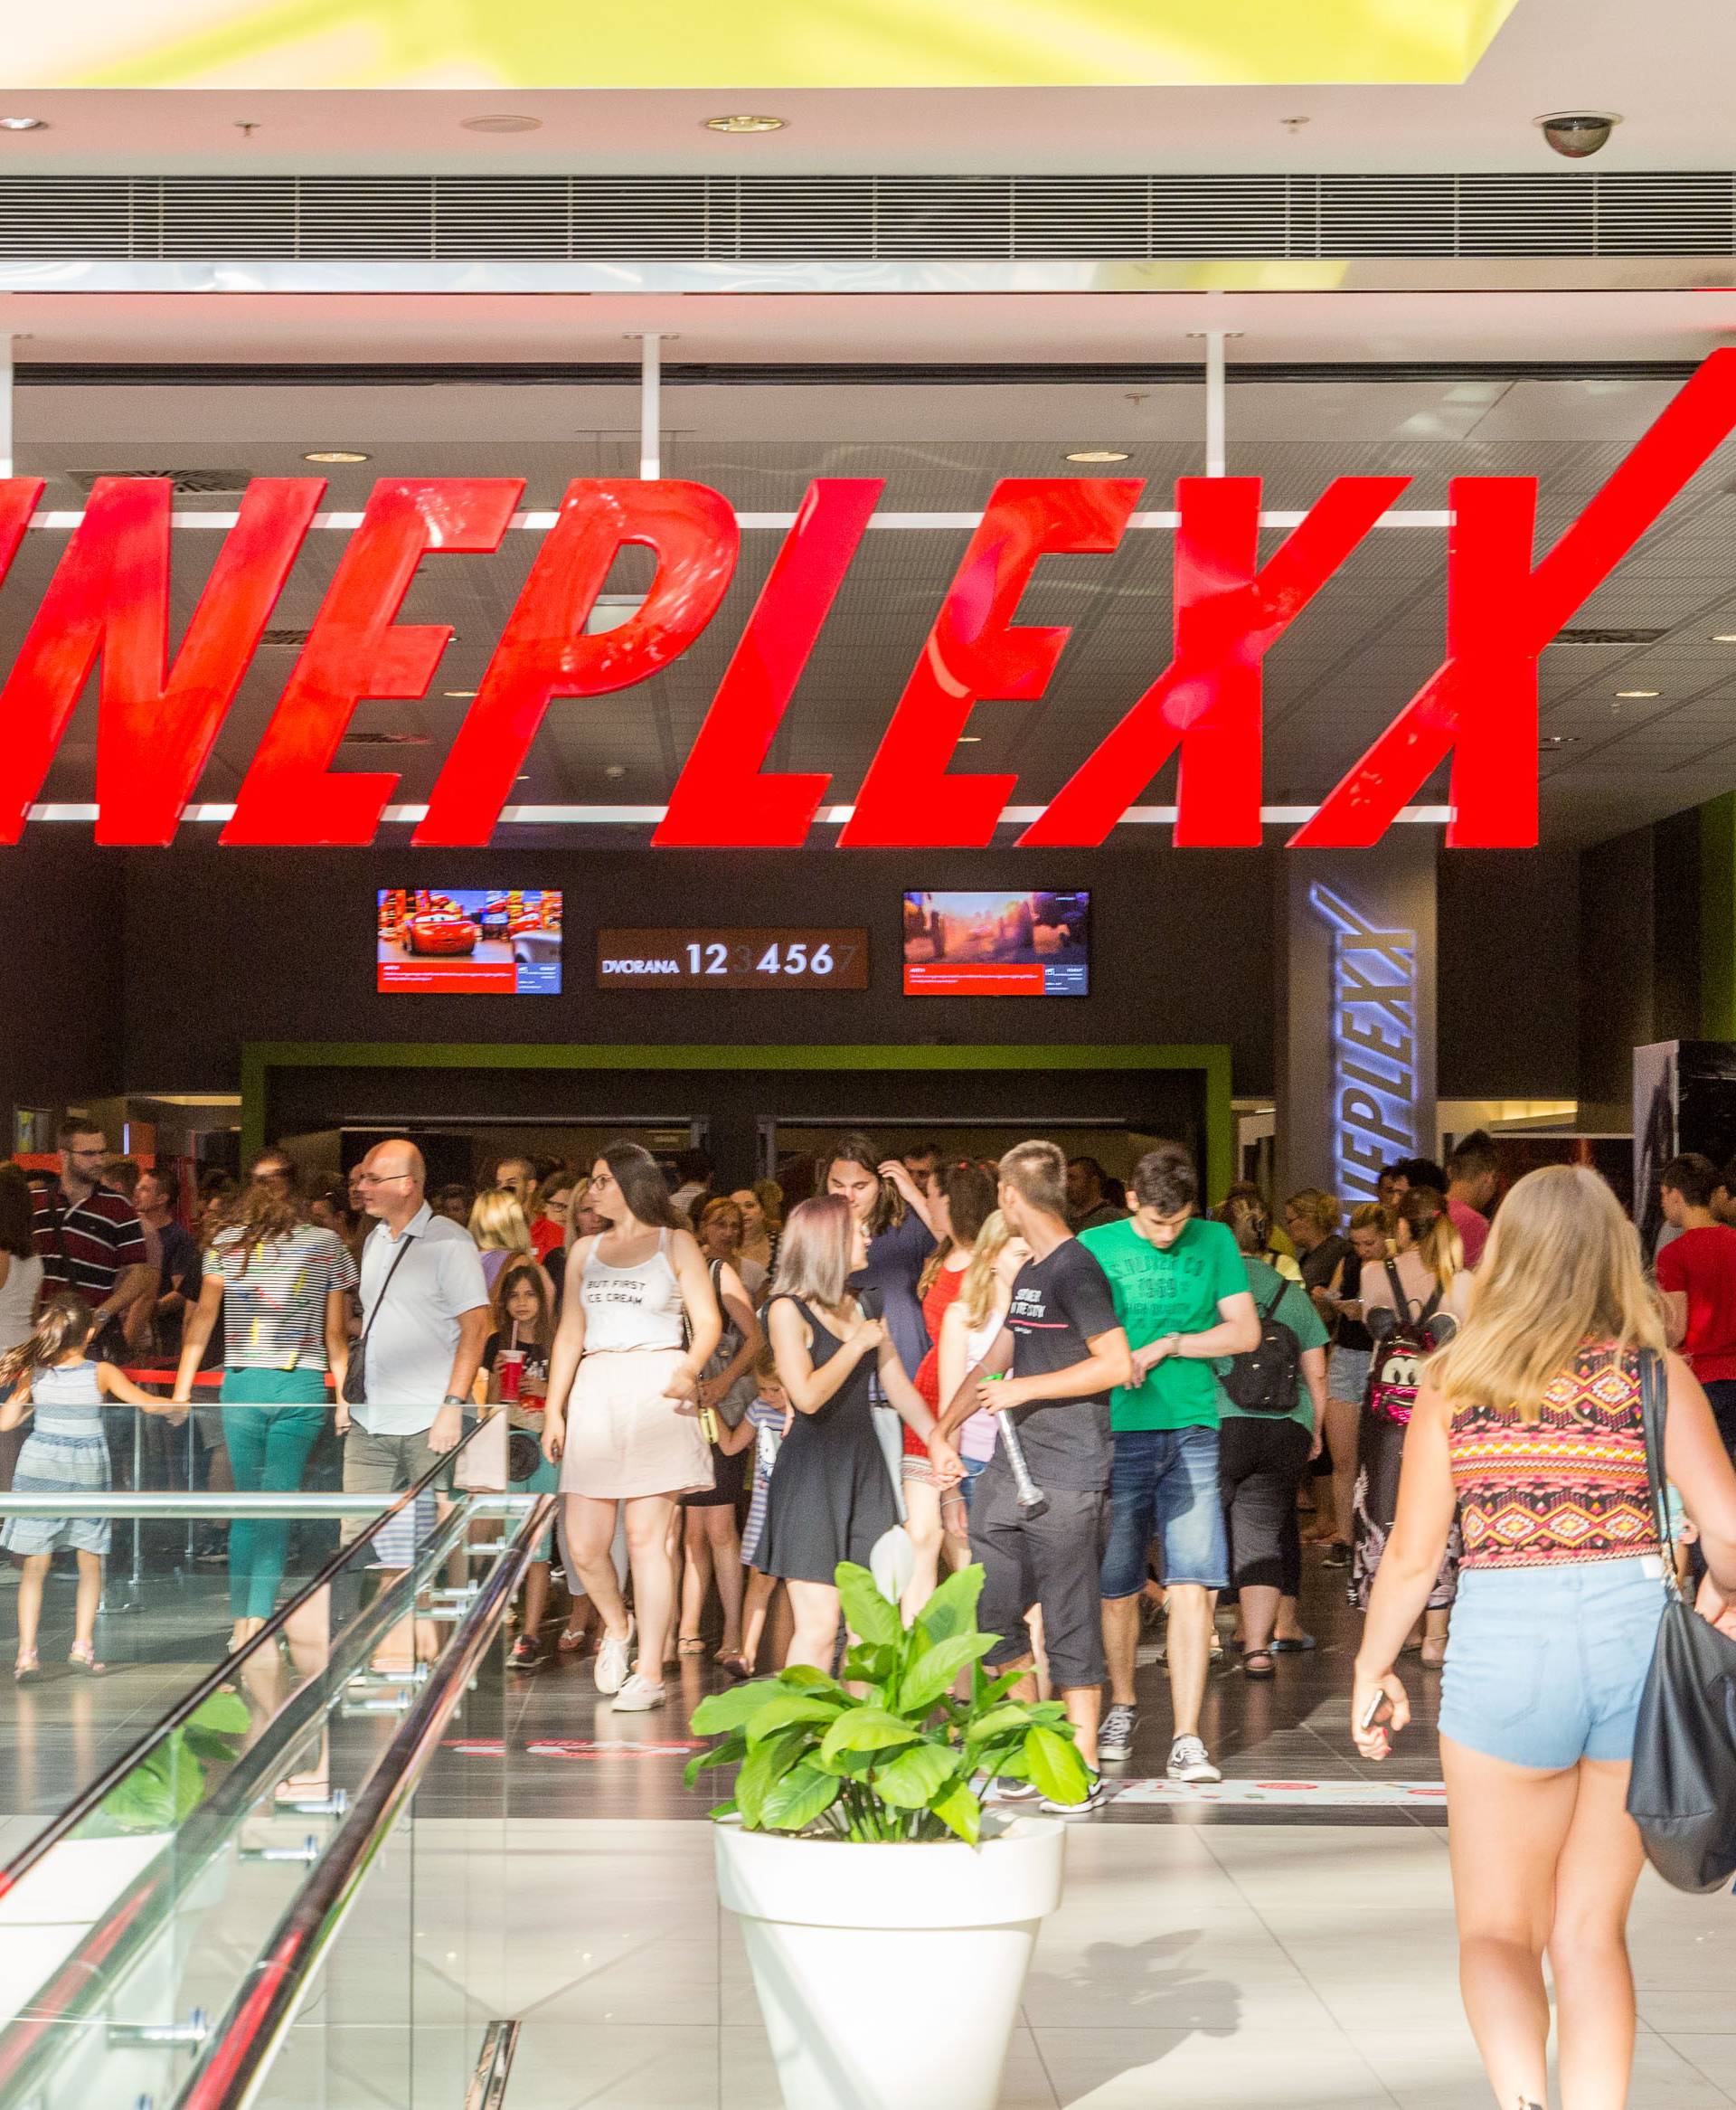 Cineplexx je ugostio 60.000 posjetitelja u jednom danu